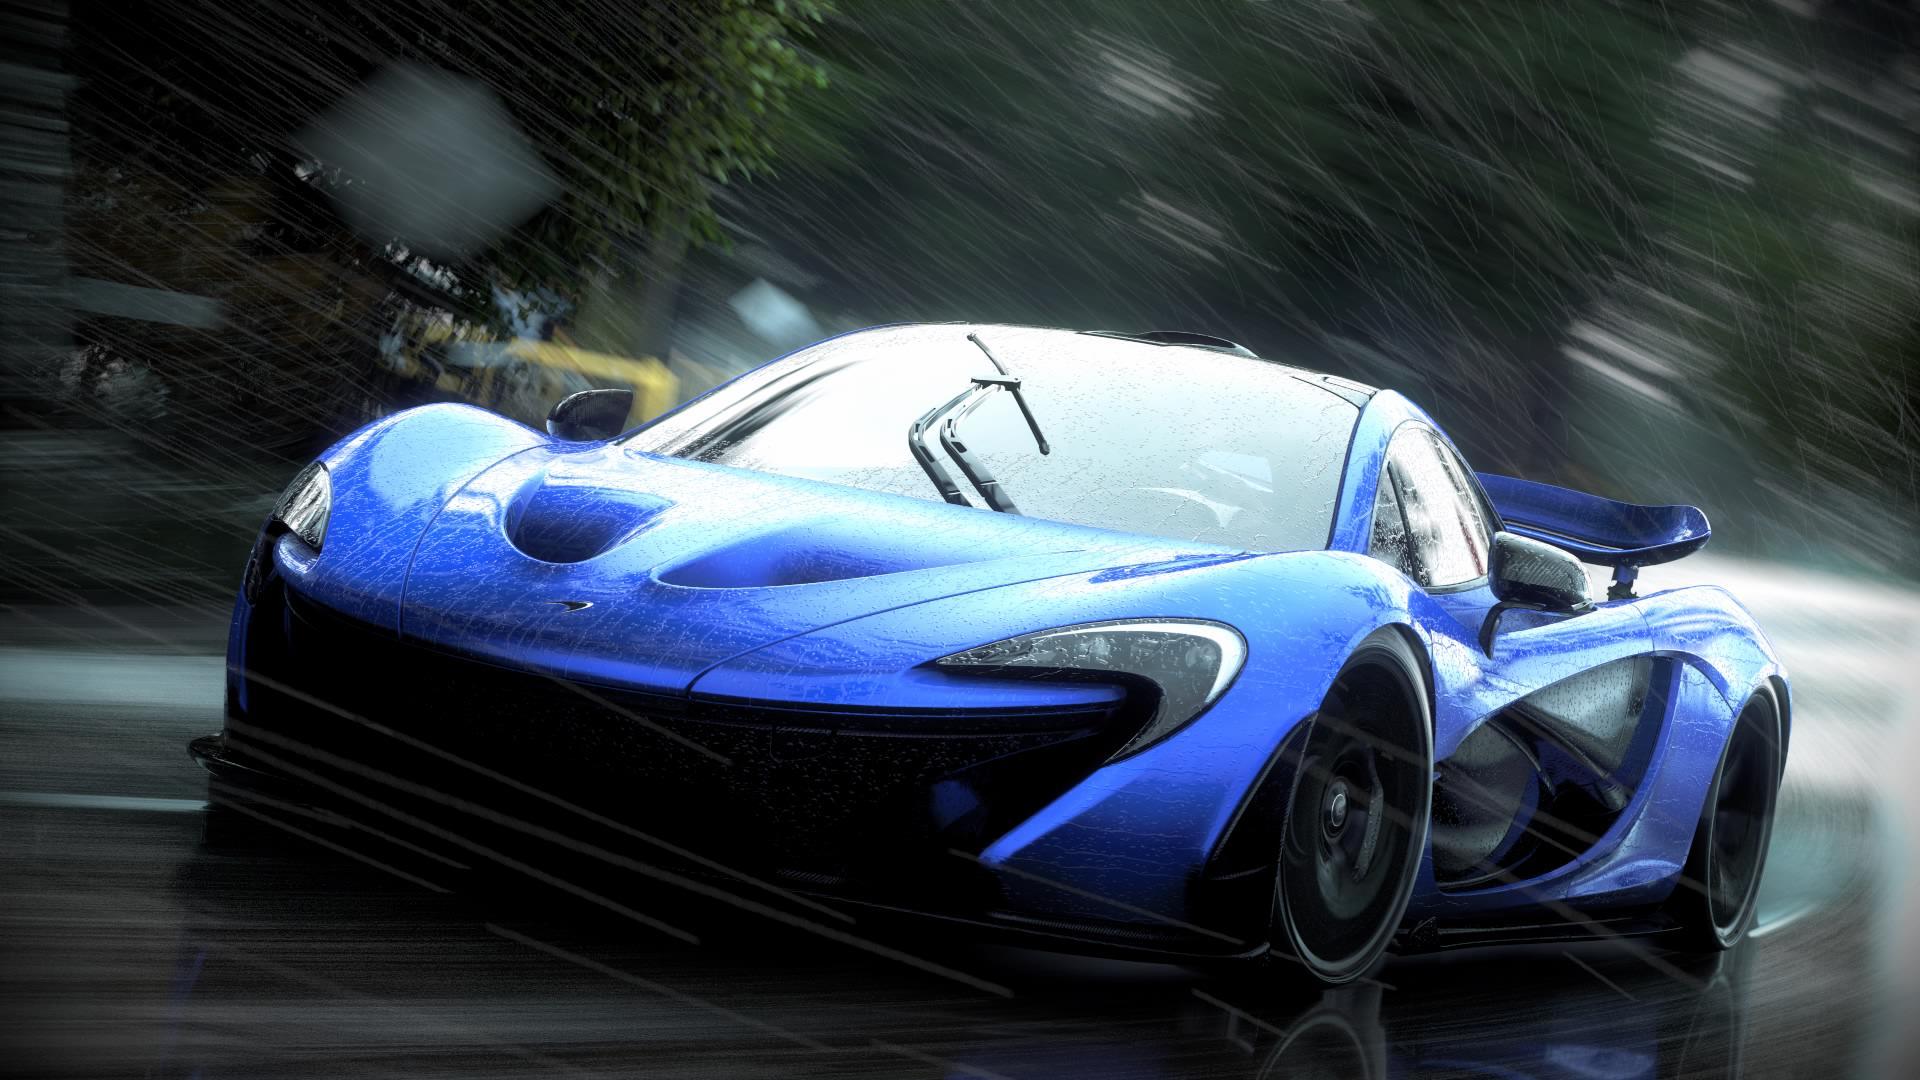 Forza 7 vs. Gran Turismo Sport vs. Project CARS 2 vs. DriveClub